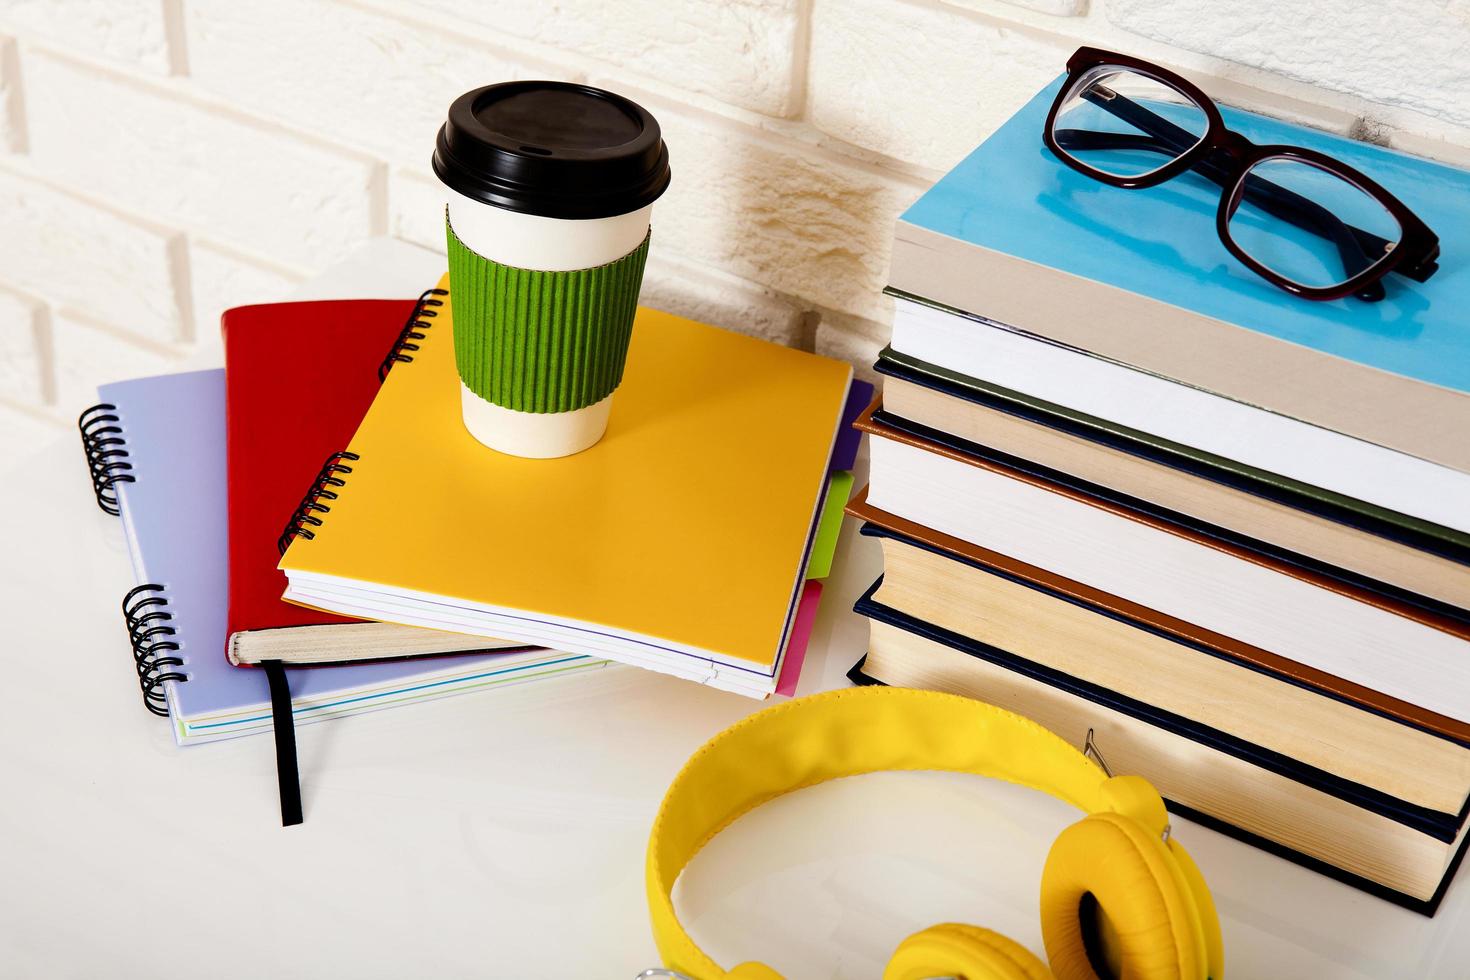 arbeitsplatz- und bildungszubehör auf dem tisch. Tasse Kaffee, Bücher, Gläser, Notizbücher, Kopfhörer. Bildung aufhalten foto